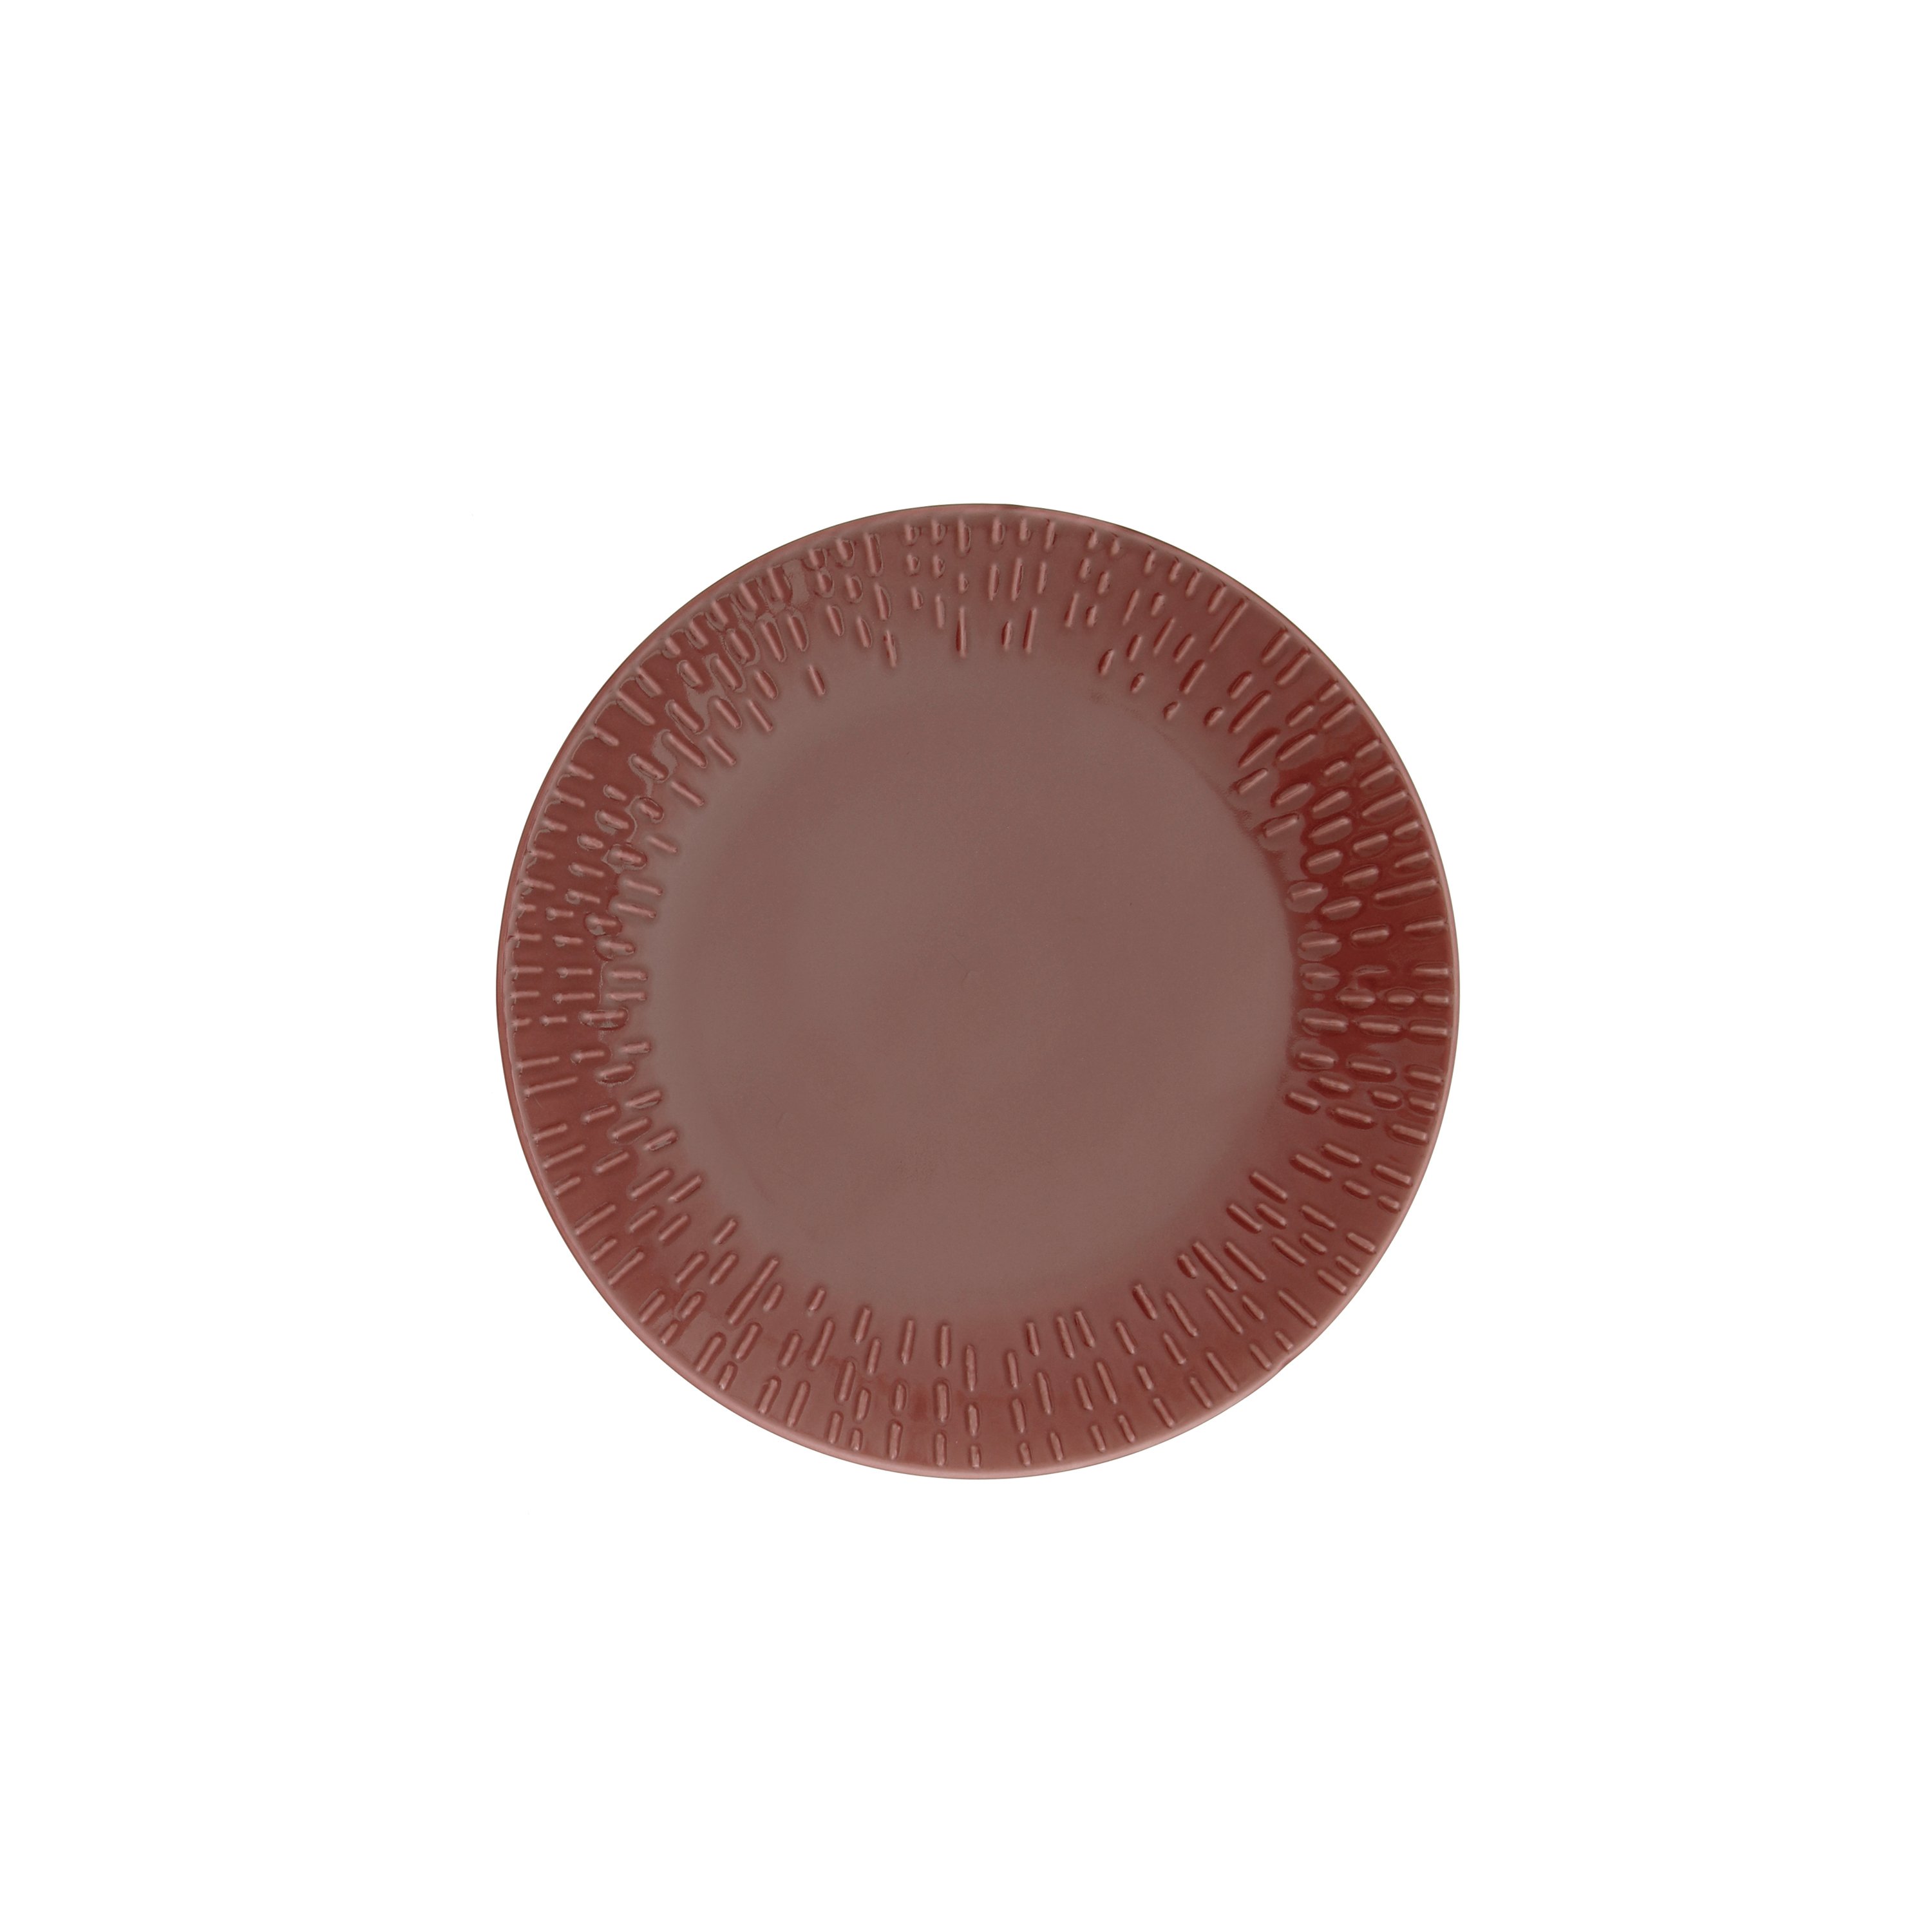 Aida - Life in Colour - Confetti - Bordeaux dessert plate w/relief porcelain (13362) - Hjemme og kjøkken